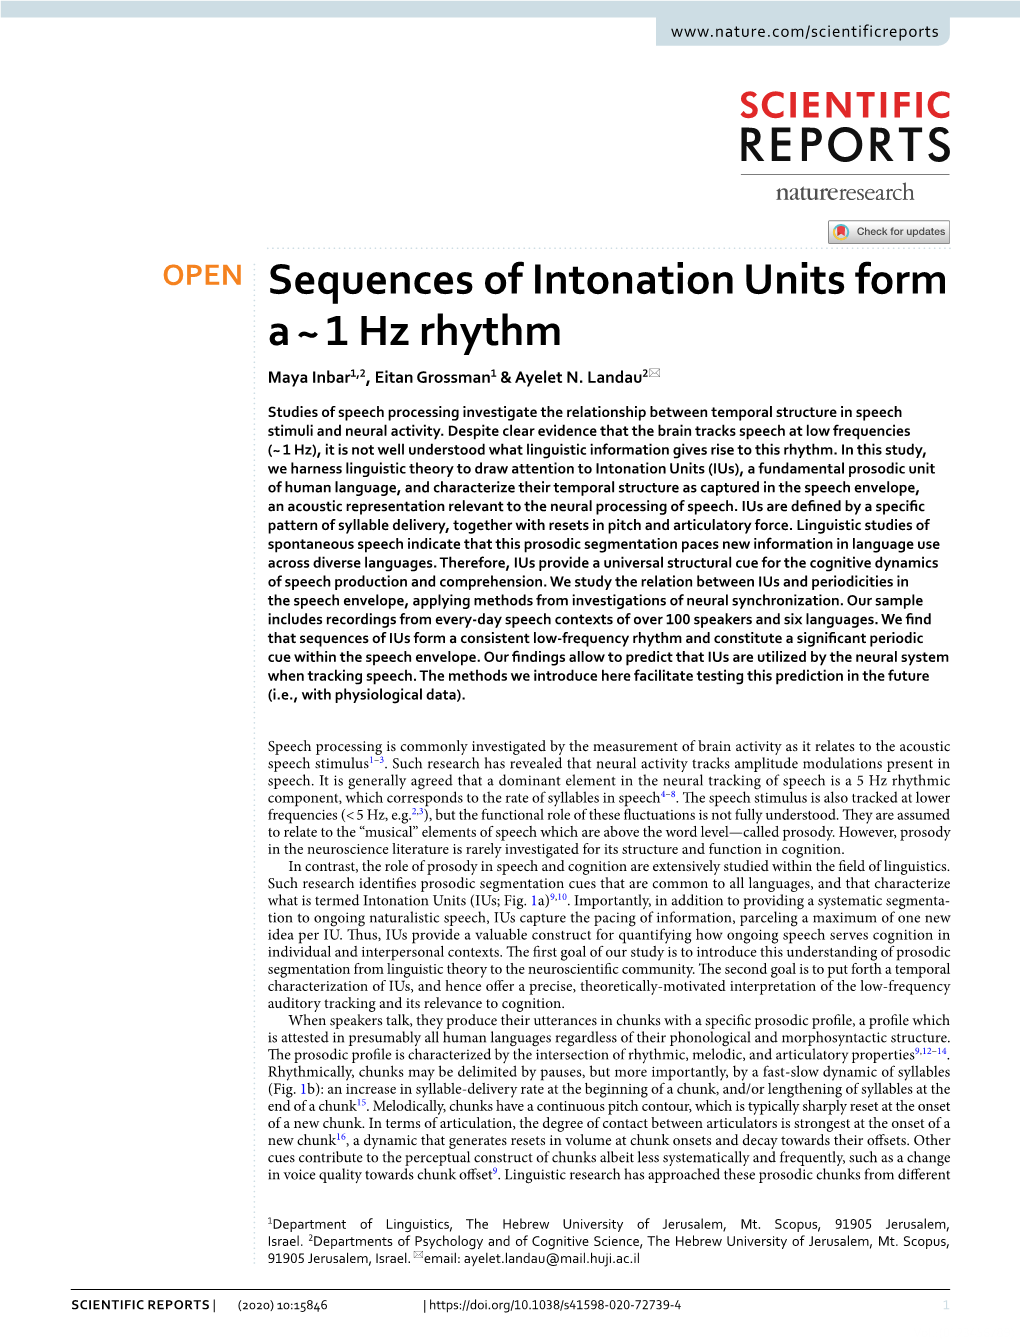 Sequences of Intonation Units Form a ~ 1 Hz Rhythm Maya Inbar1,2, Eitan Grossman1 & Ayelet N